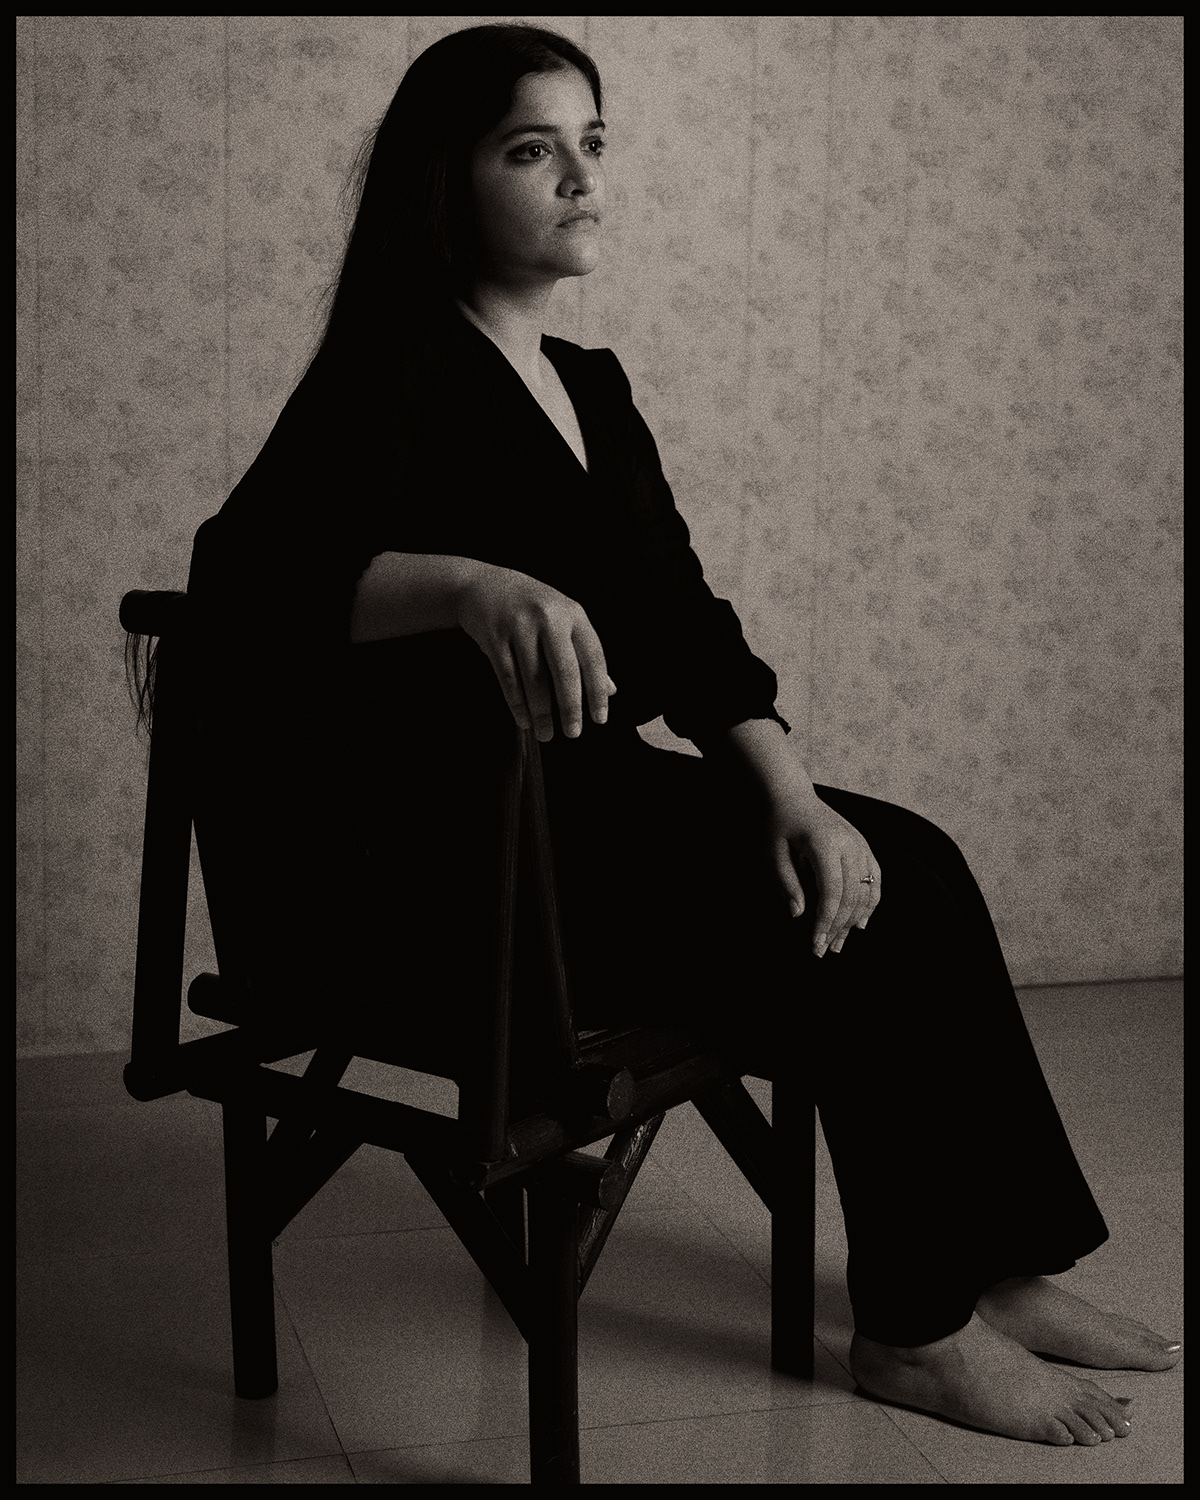 black and white monochrome portrait Photography  beauty fine art Melancholy woman concept art indoor